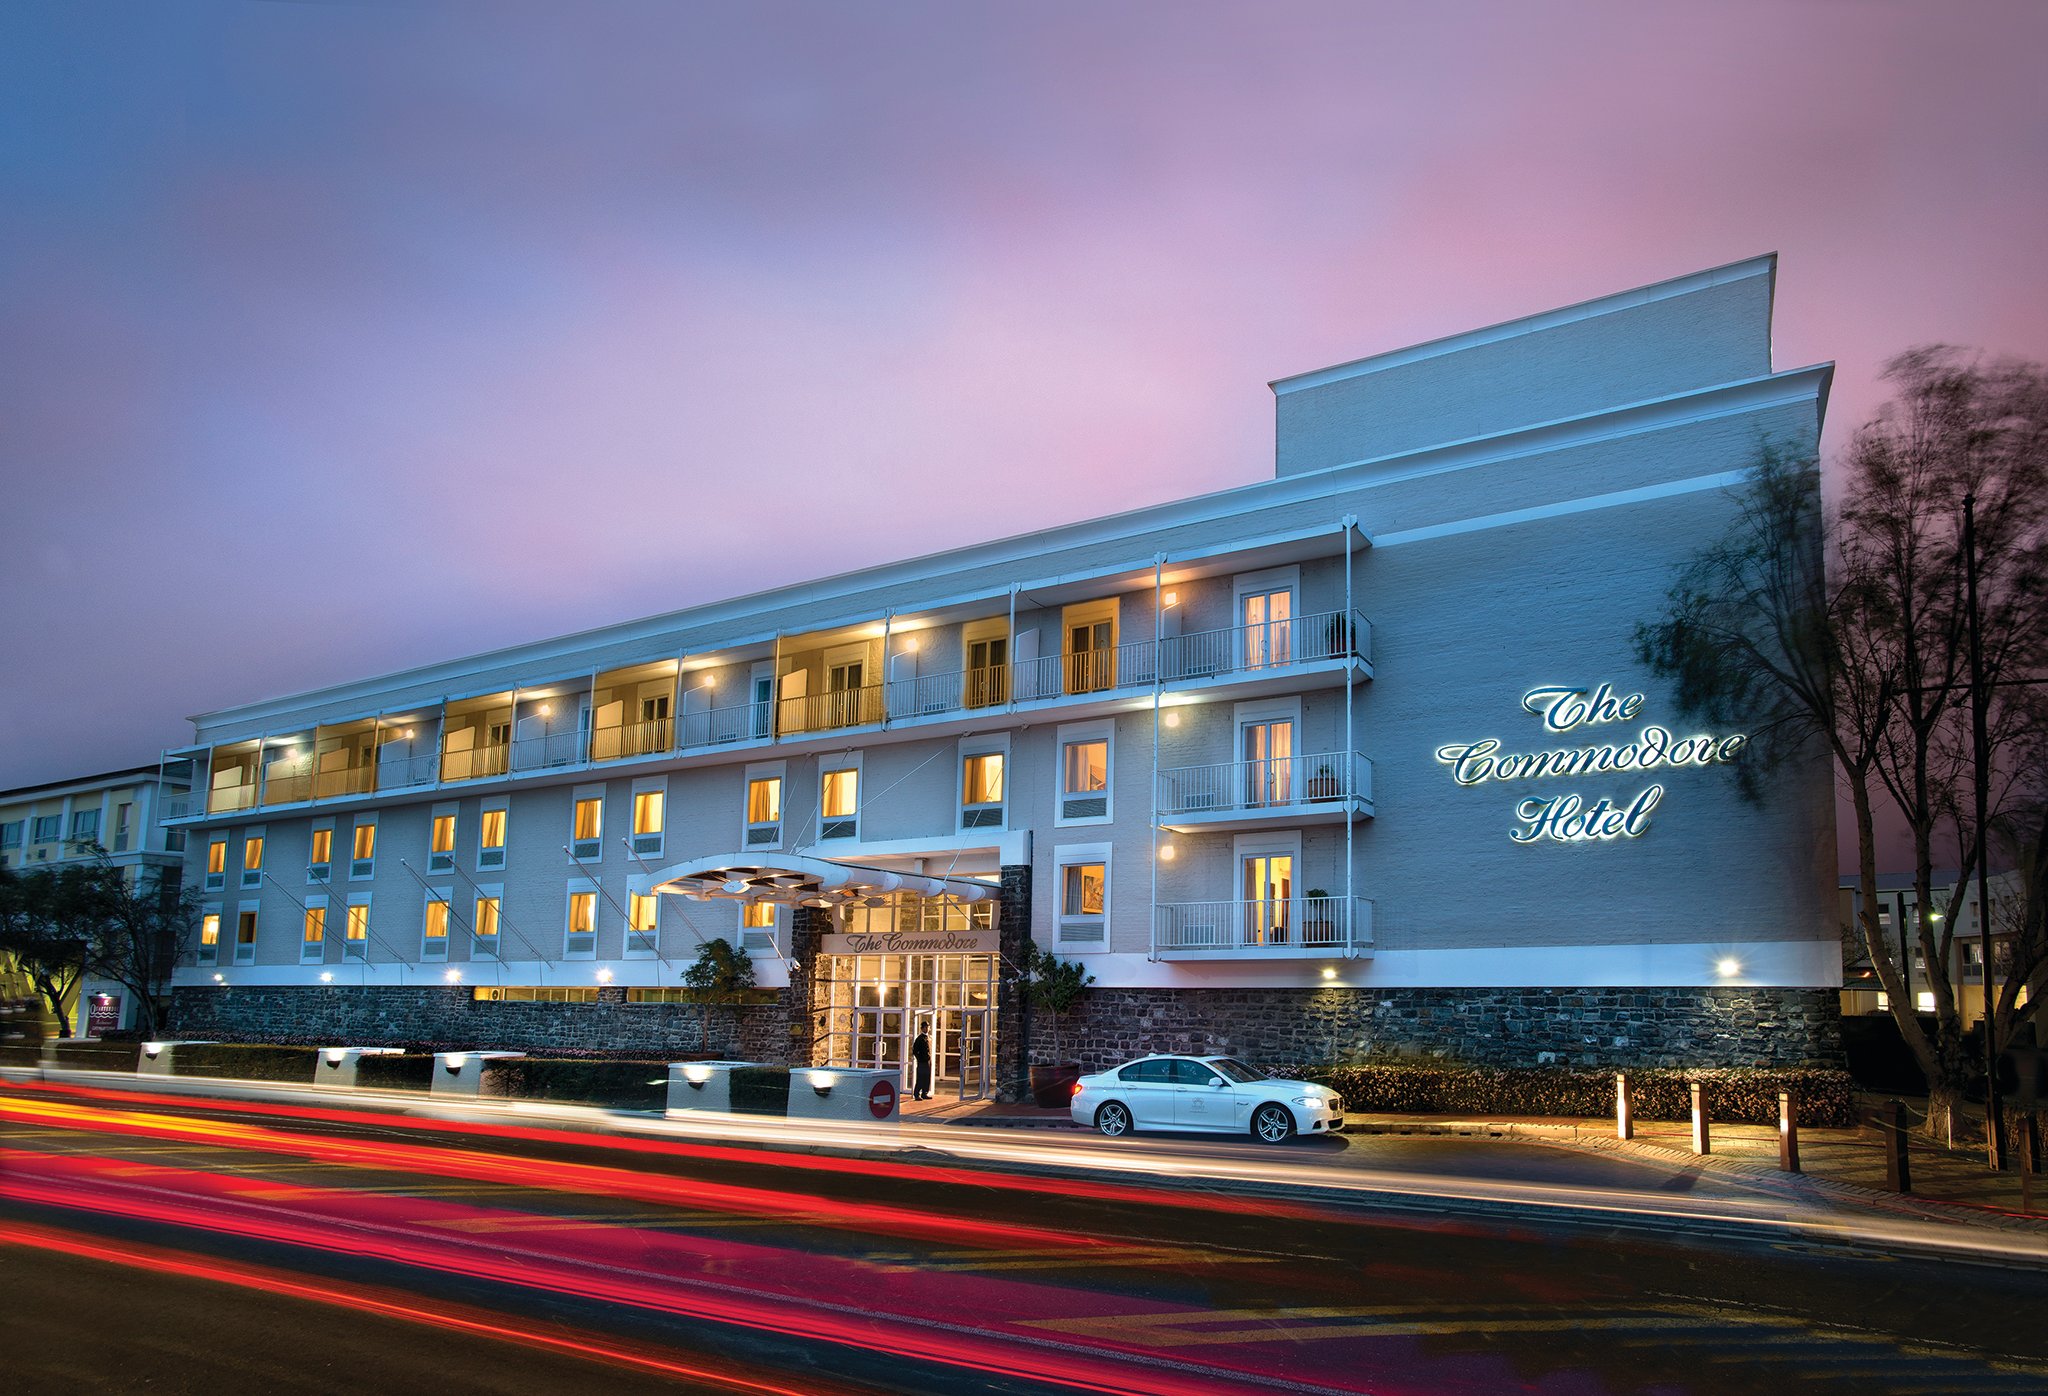 The Commodore Hotel image